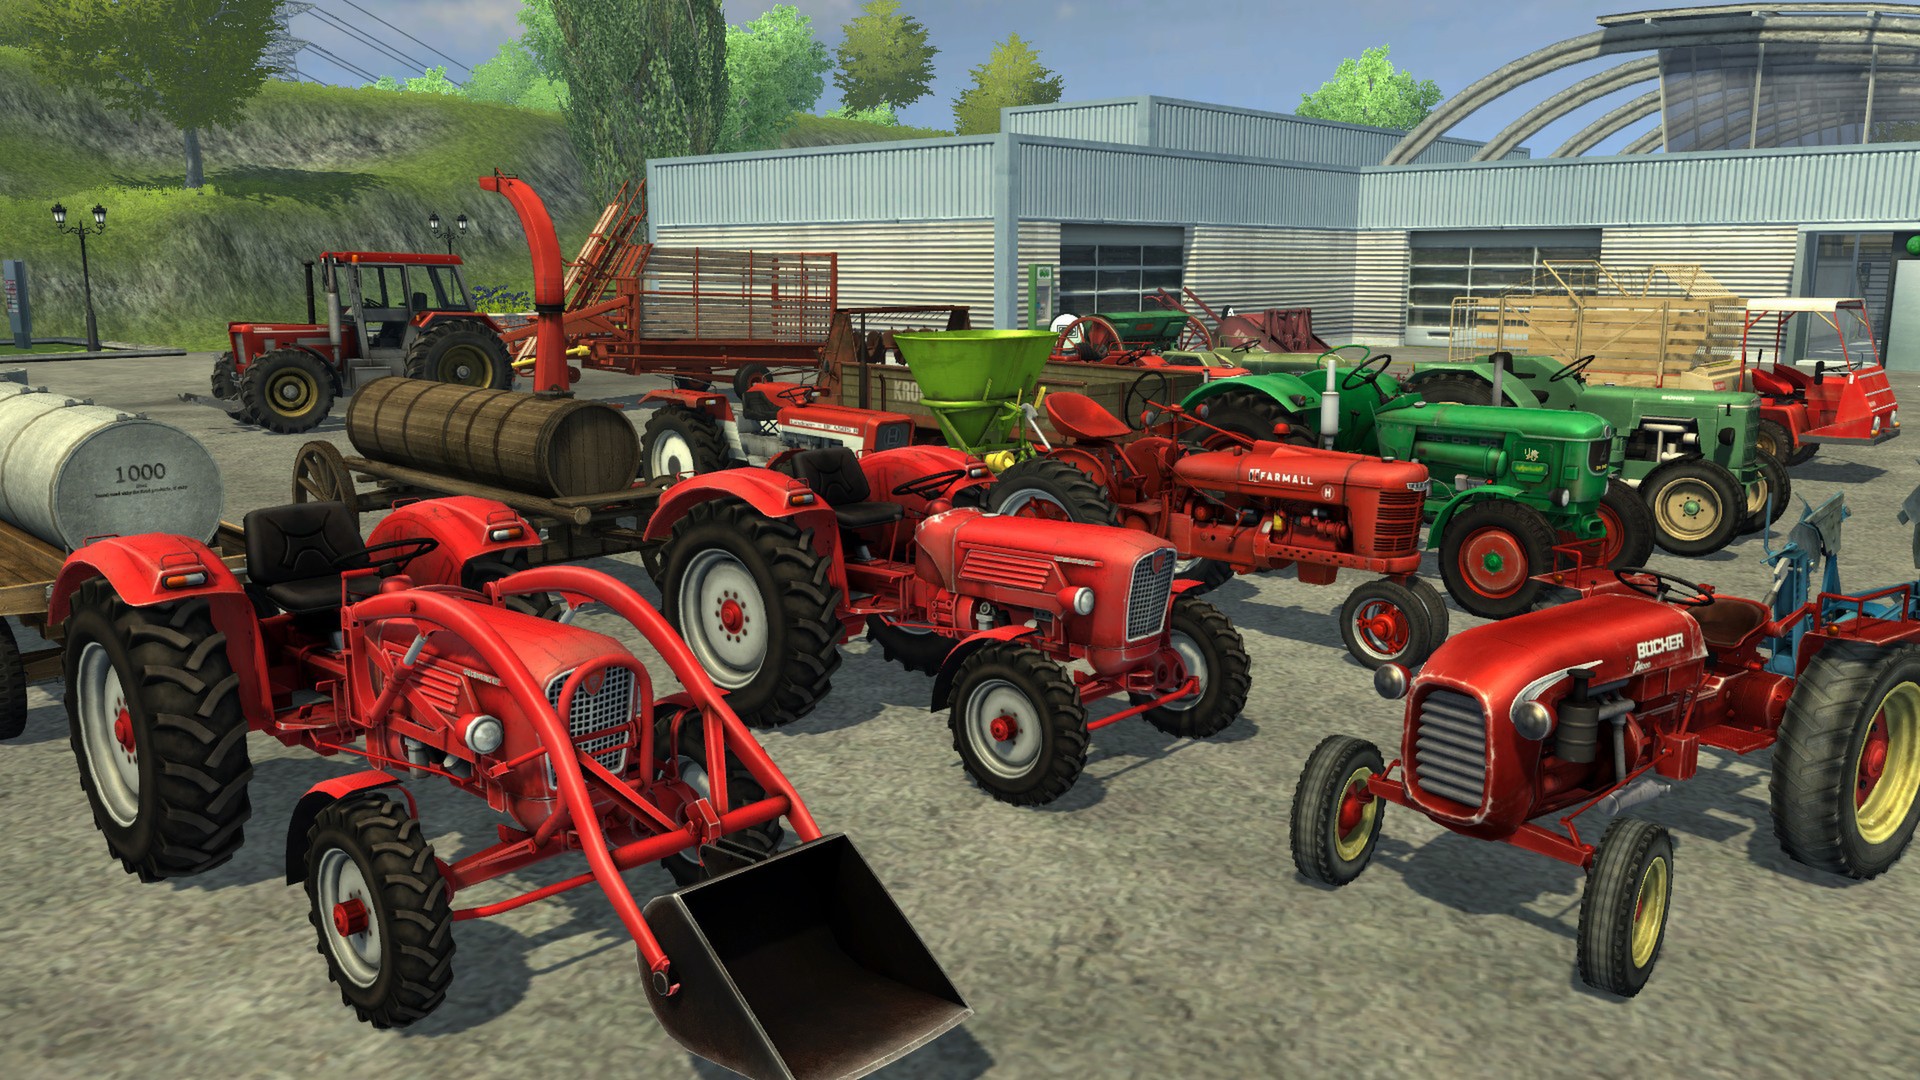 Farming Simulator 2013 Backgrounds, Compatible - PC, Mobile, Gadgets| 1920x1080 px